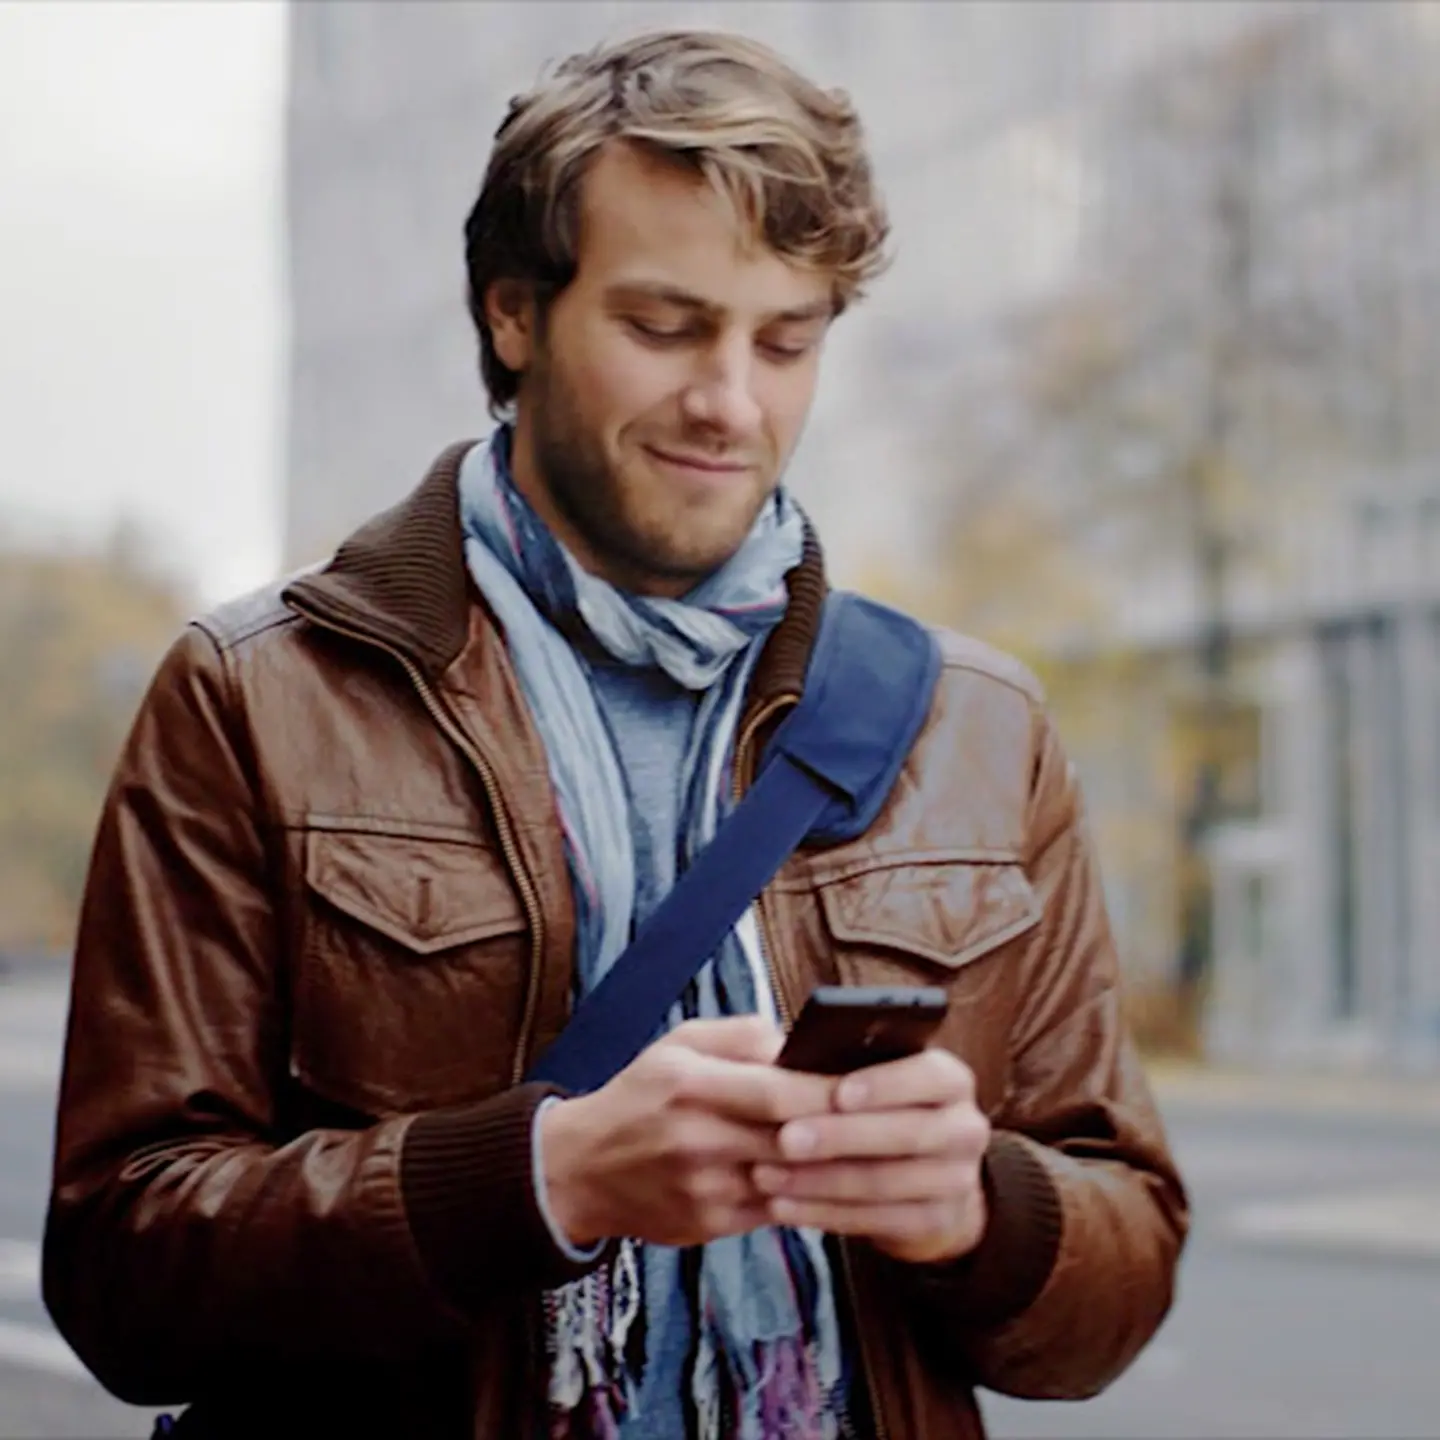 Mann schaut an einer Ampel auf sein Smartphone